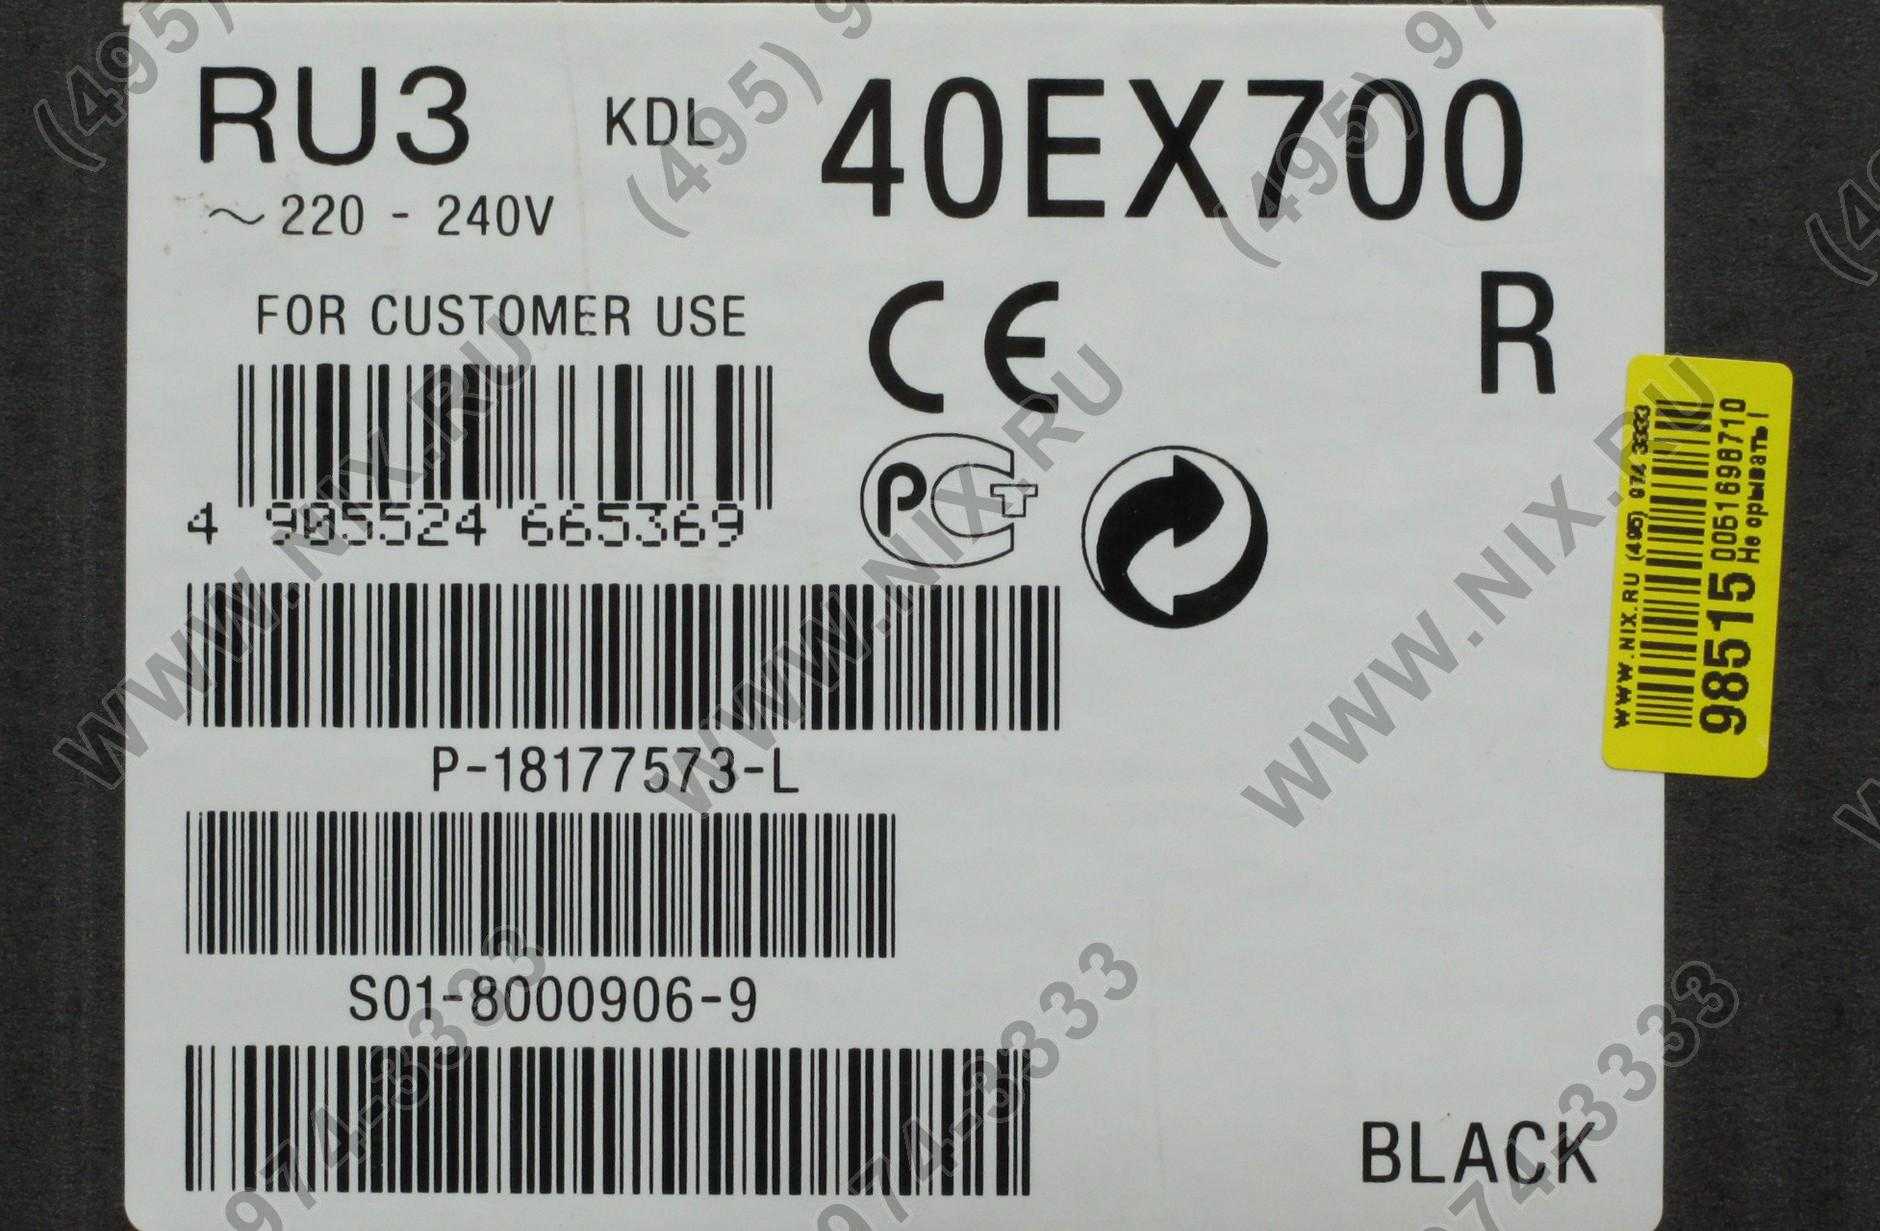 Sony kdl-40ex700 - купить , скидки, цена, отзывы, обзор, характеристики - телевизоры